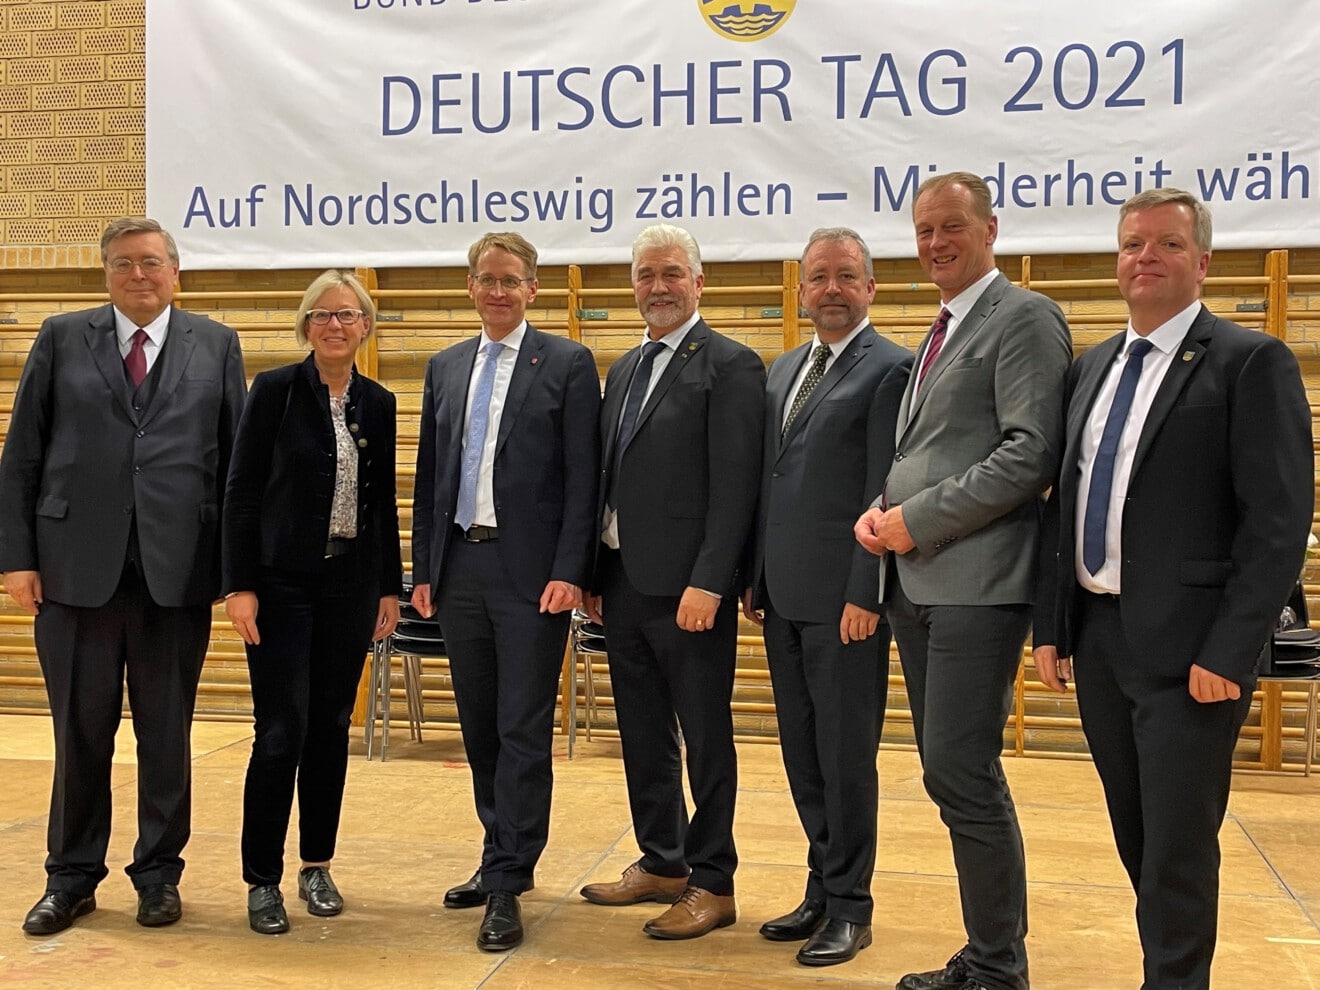 Festveranstaltung zum Deutschen Tag 2021 vom Bund Deutscher Nordschleswiger